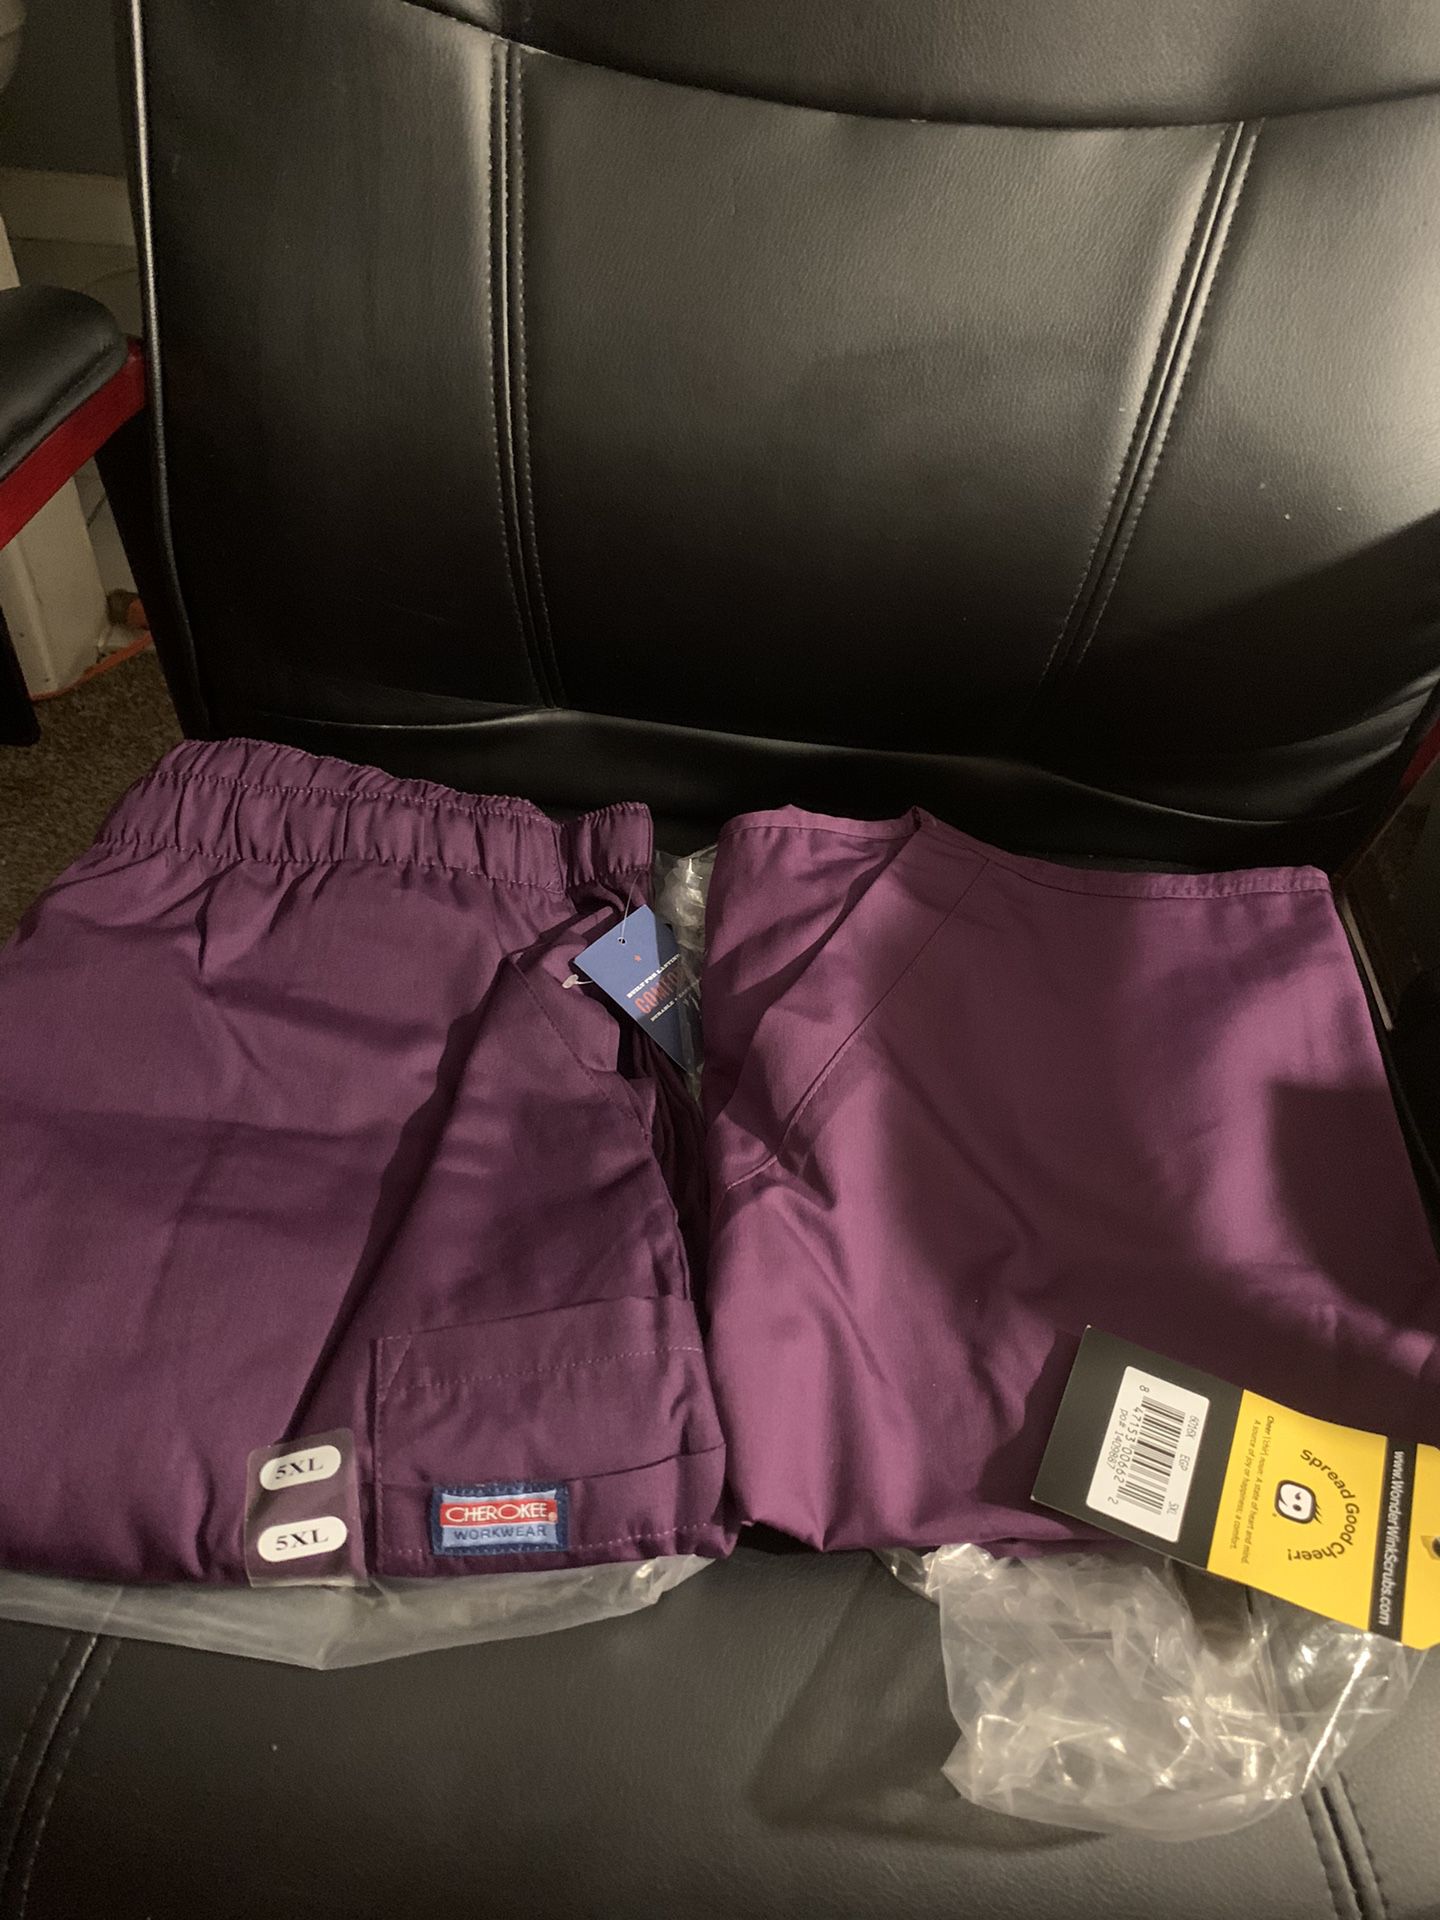 Purple 5x Scrub Set (new) With Pockets